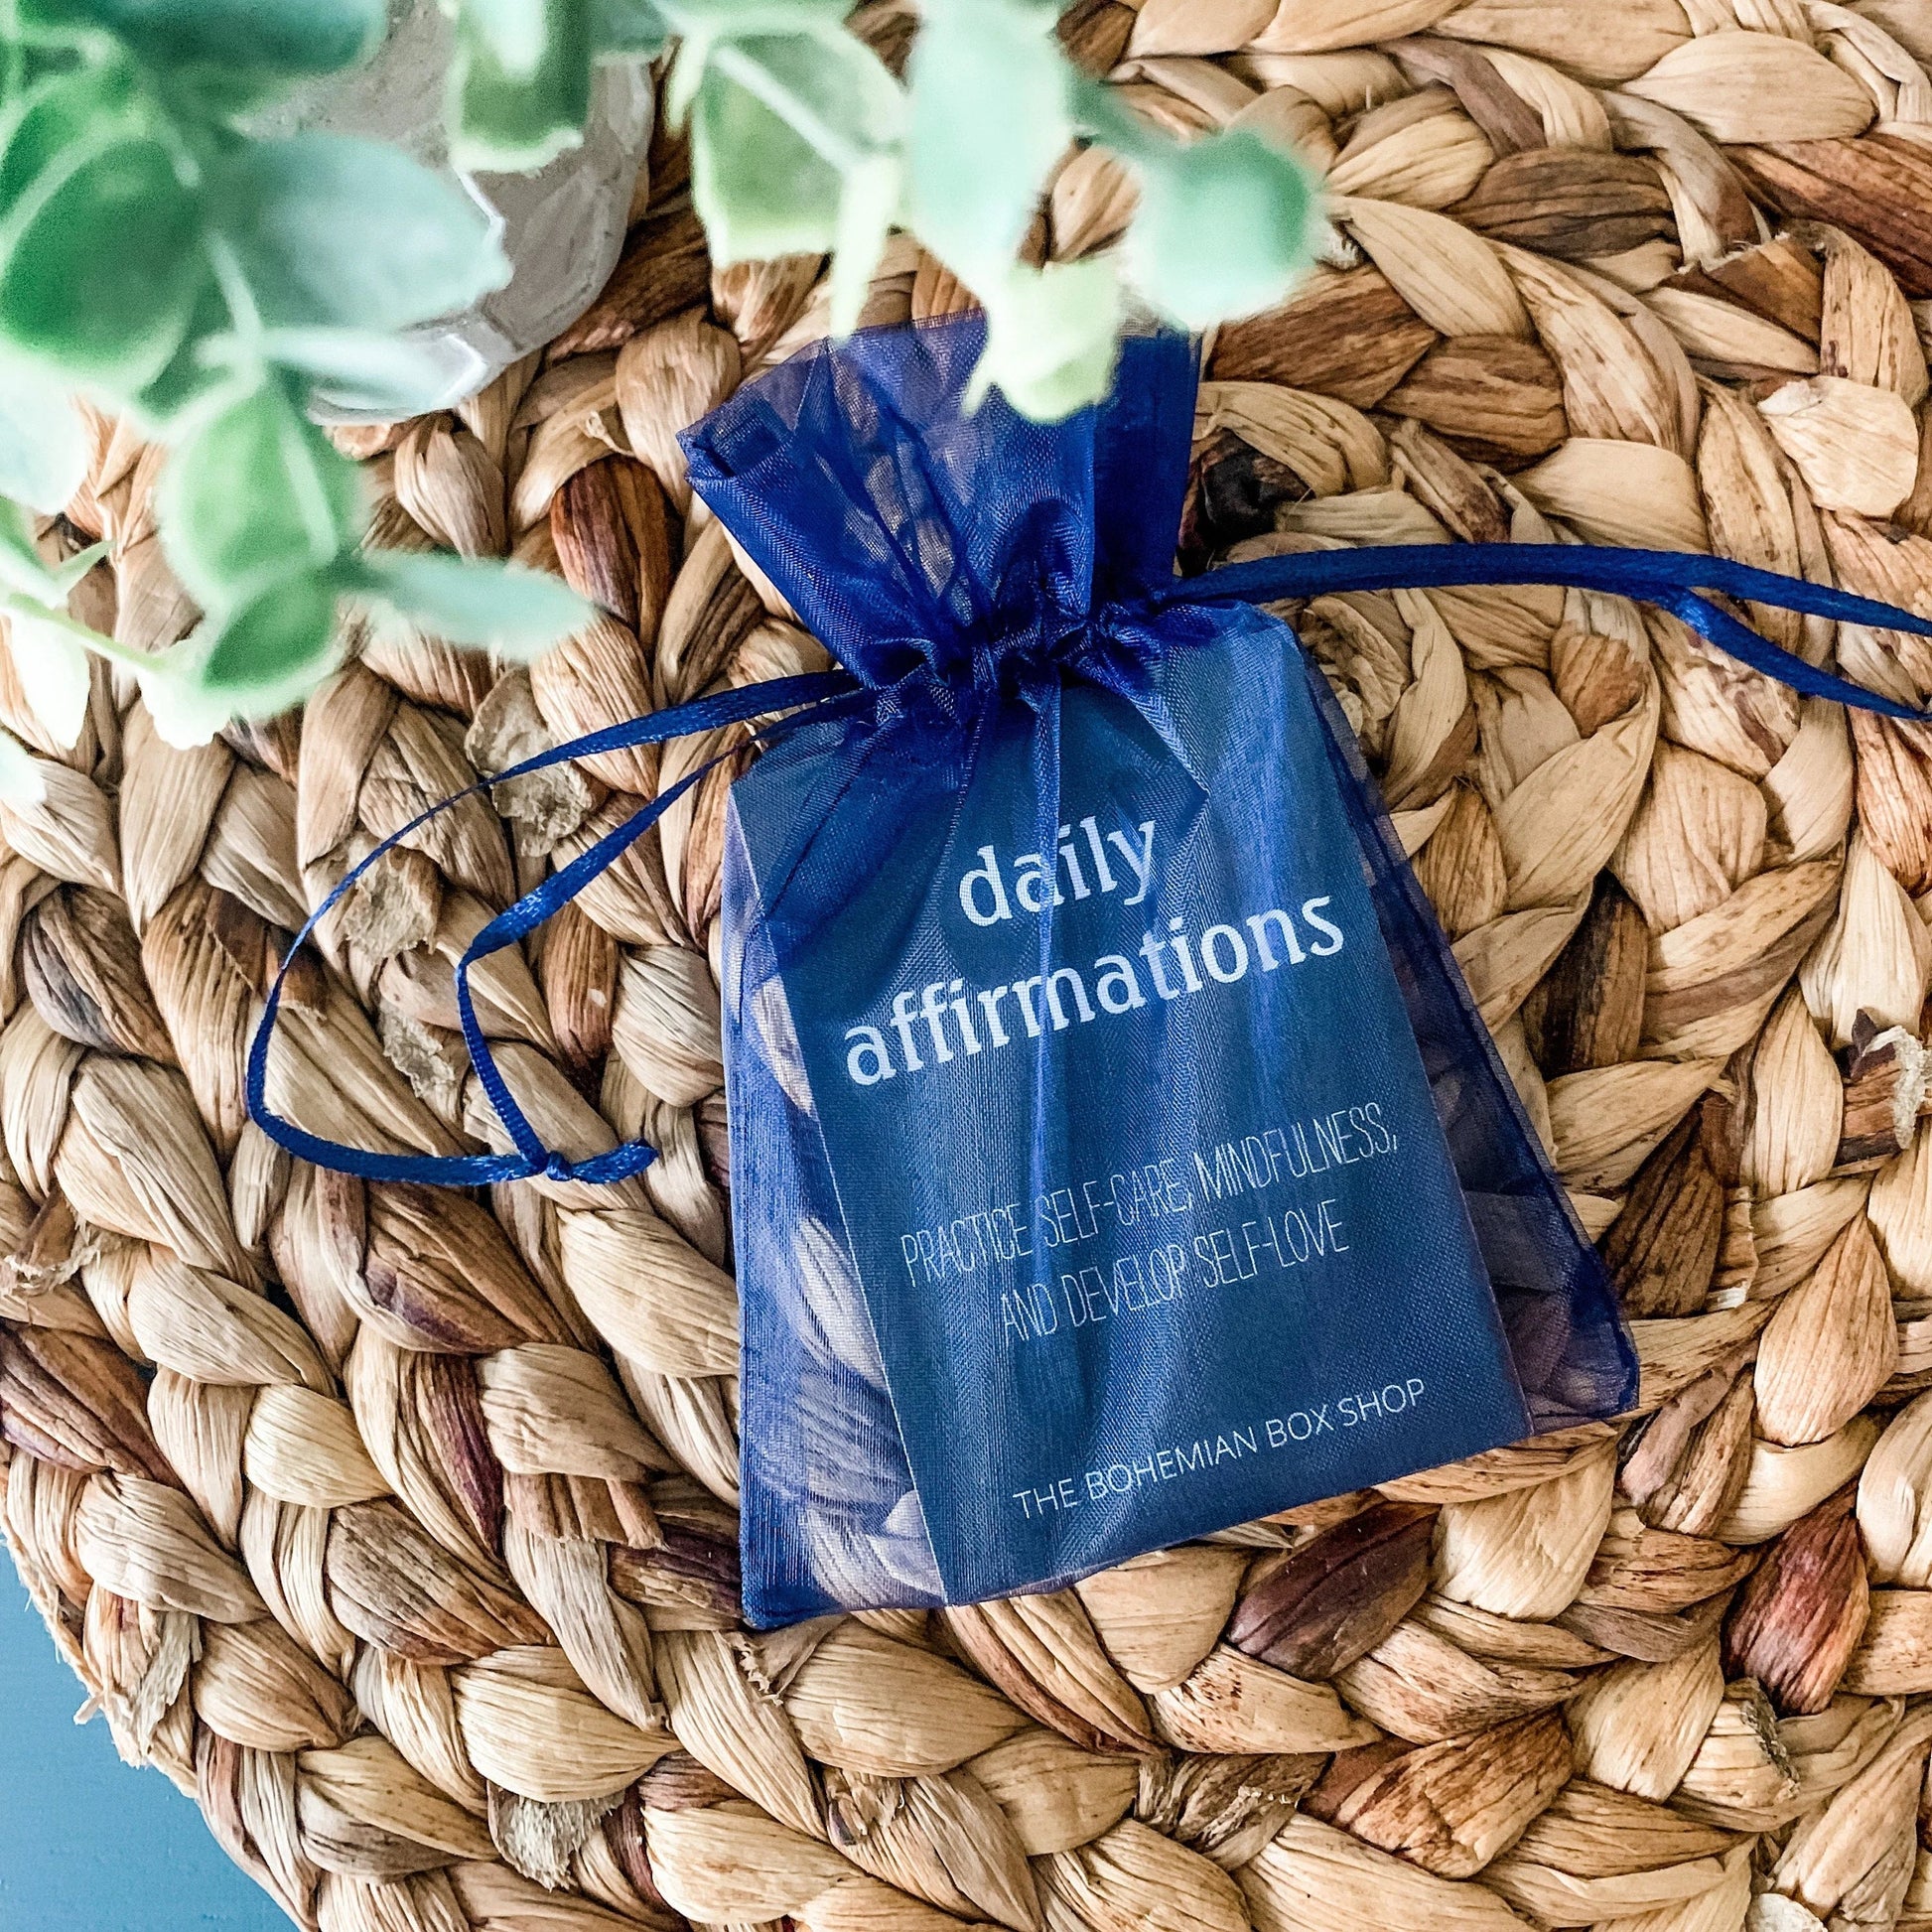 Positive Affirmation Cards For Men, Mindfulness Cards, in blue sheer bag